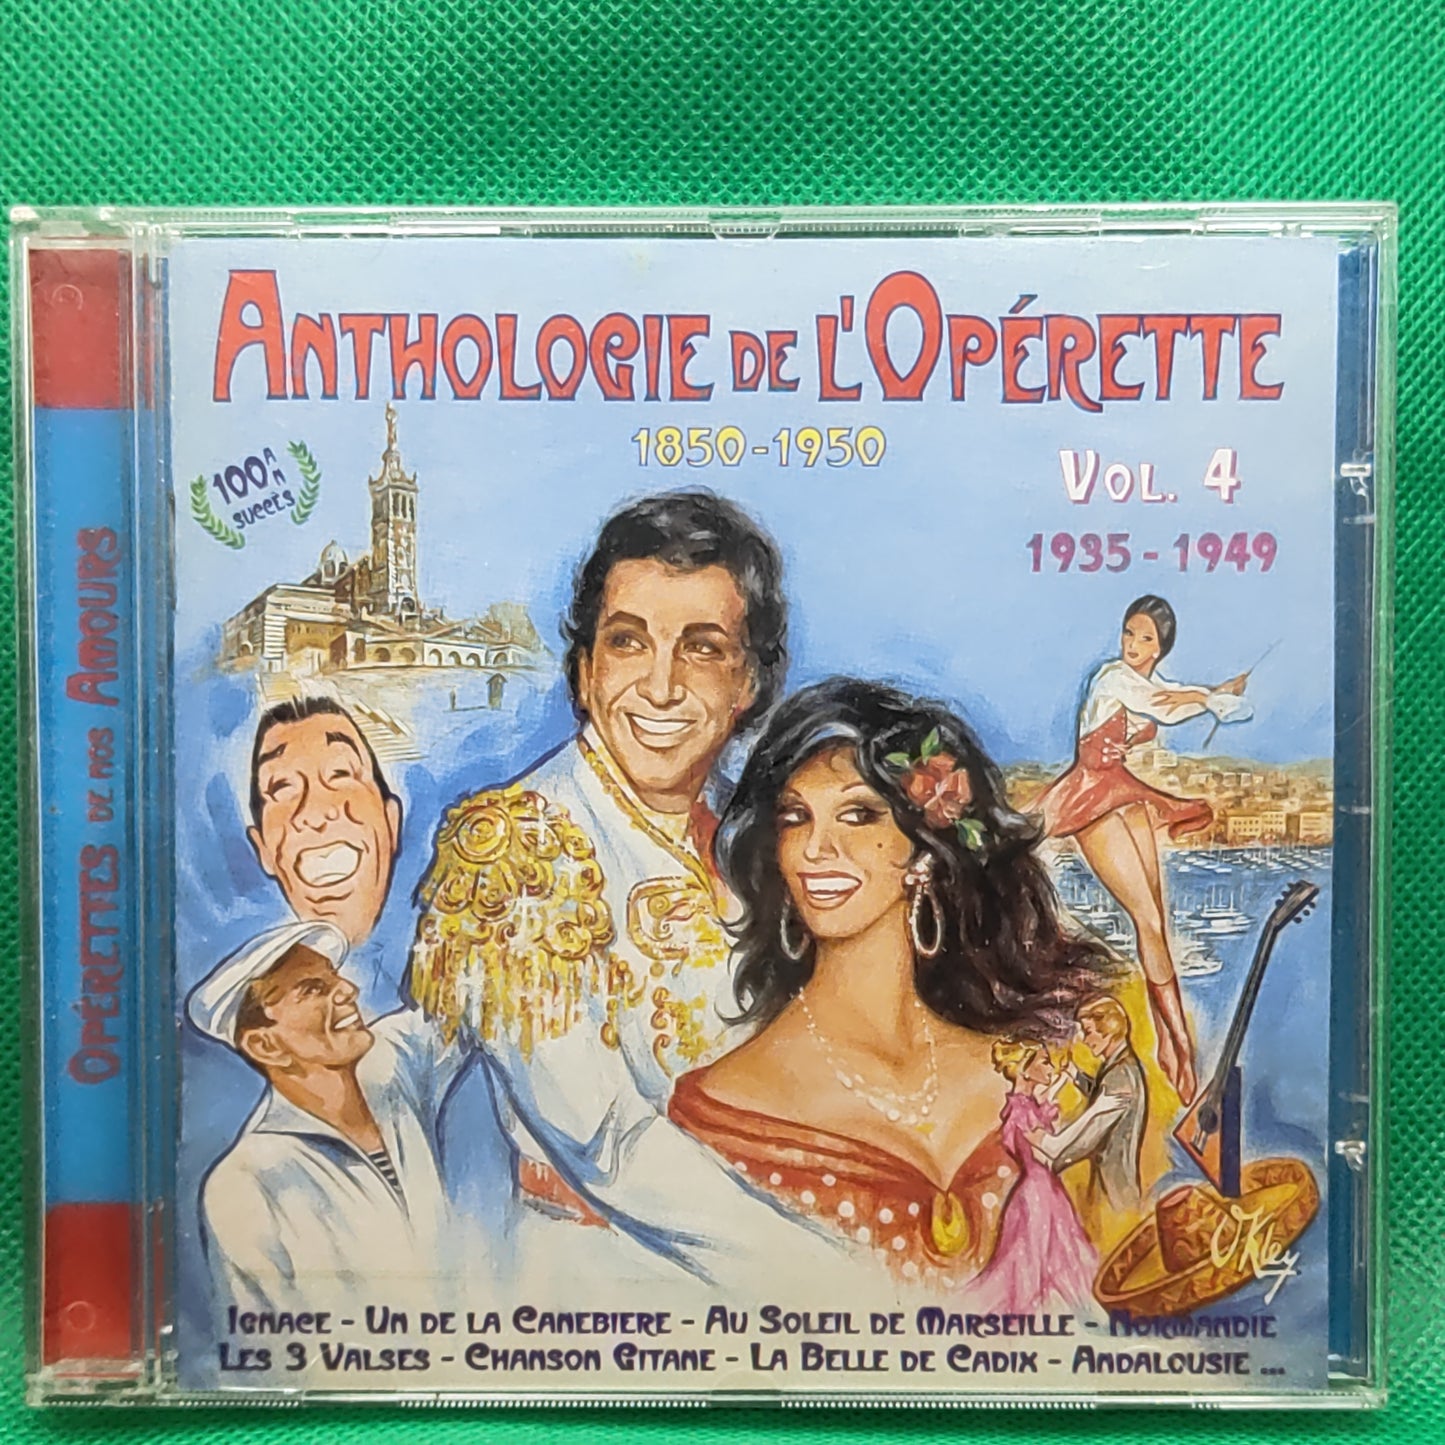 Anthologie de L'Opérette de 1850 à 1950 volume 4 1935-1949